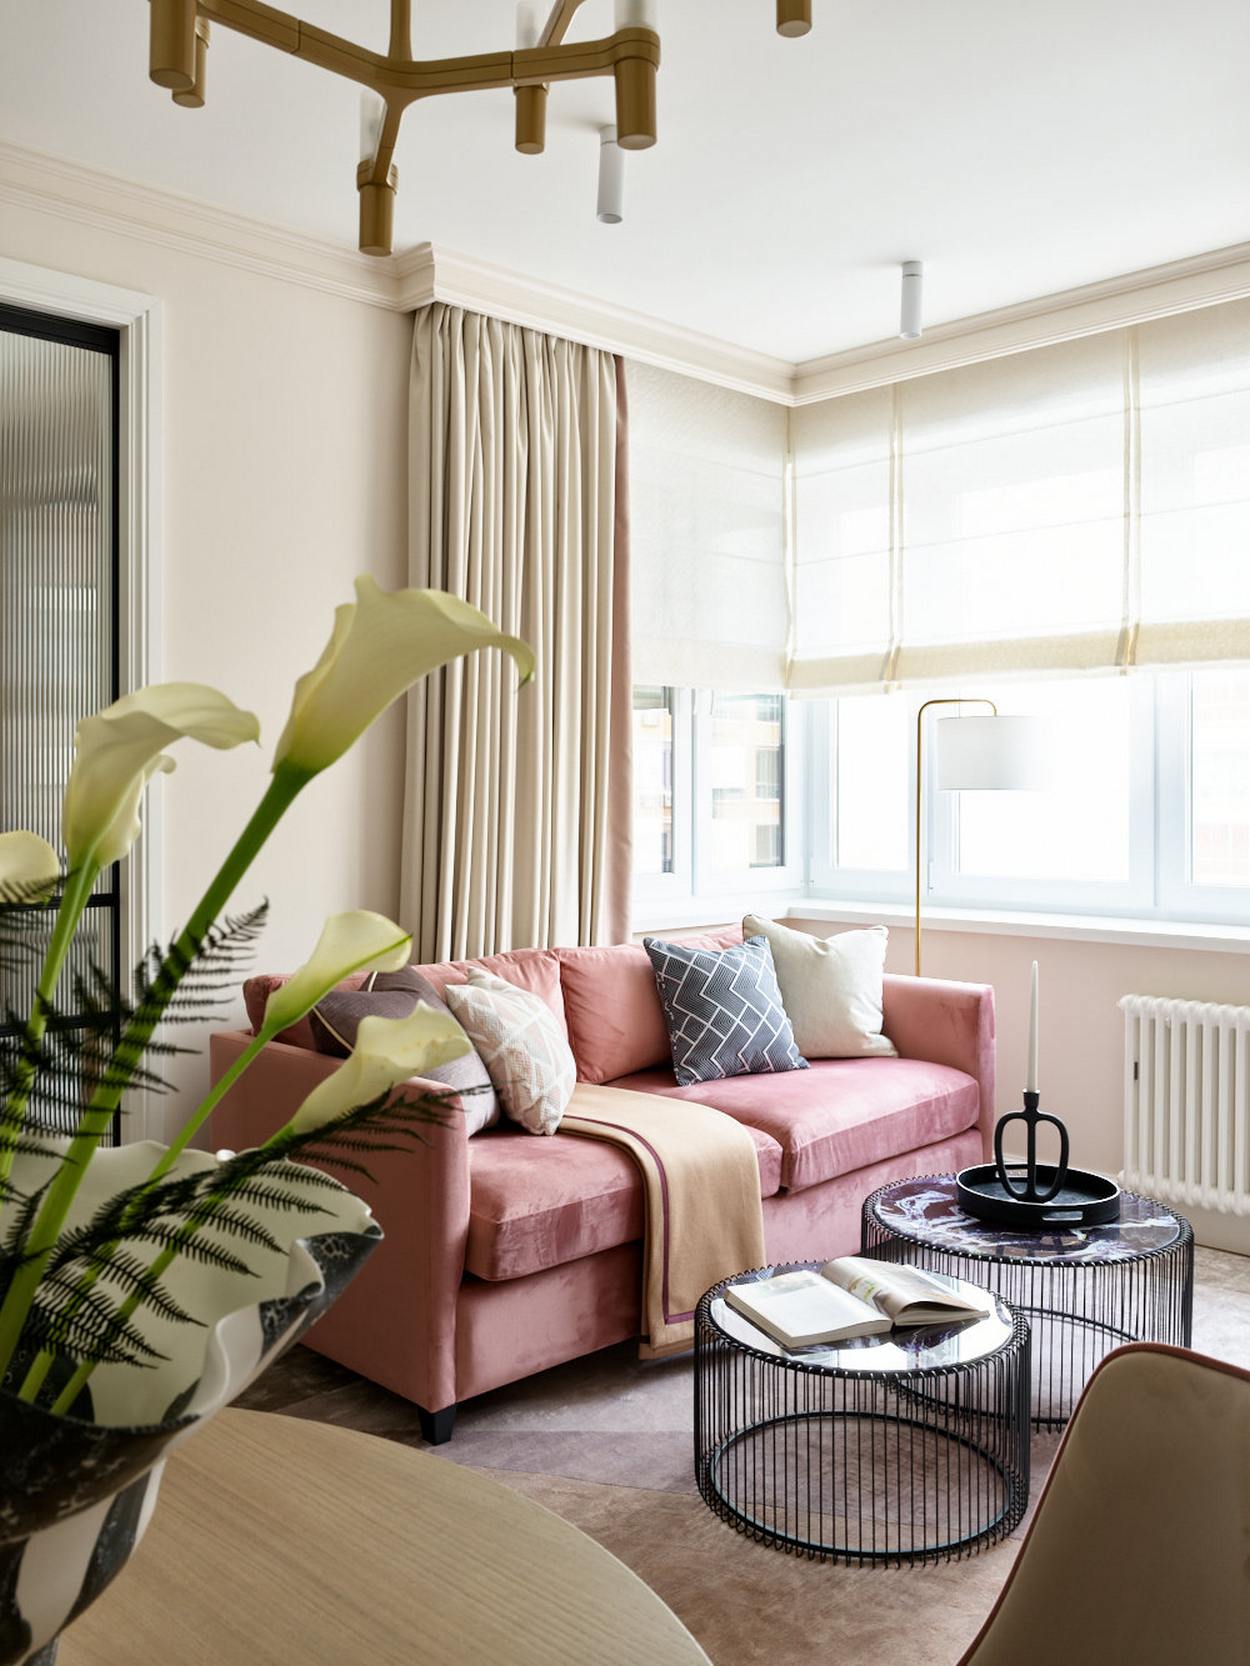 Phòng khách nhỏ xinh bên ô cửa đầy nắng ấm với ghế sofa màu hồng nổi bật giữa phông nền trung tính. Bộ đôi bàn nước thiết kế kiểu lồng chim, thêm chân nến trang trí cho vẻ đẹp cổ điển.